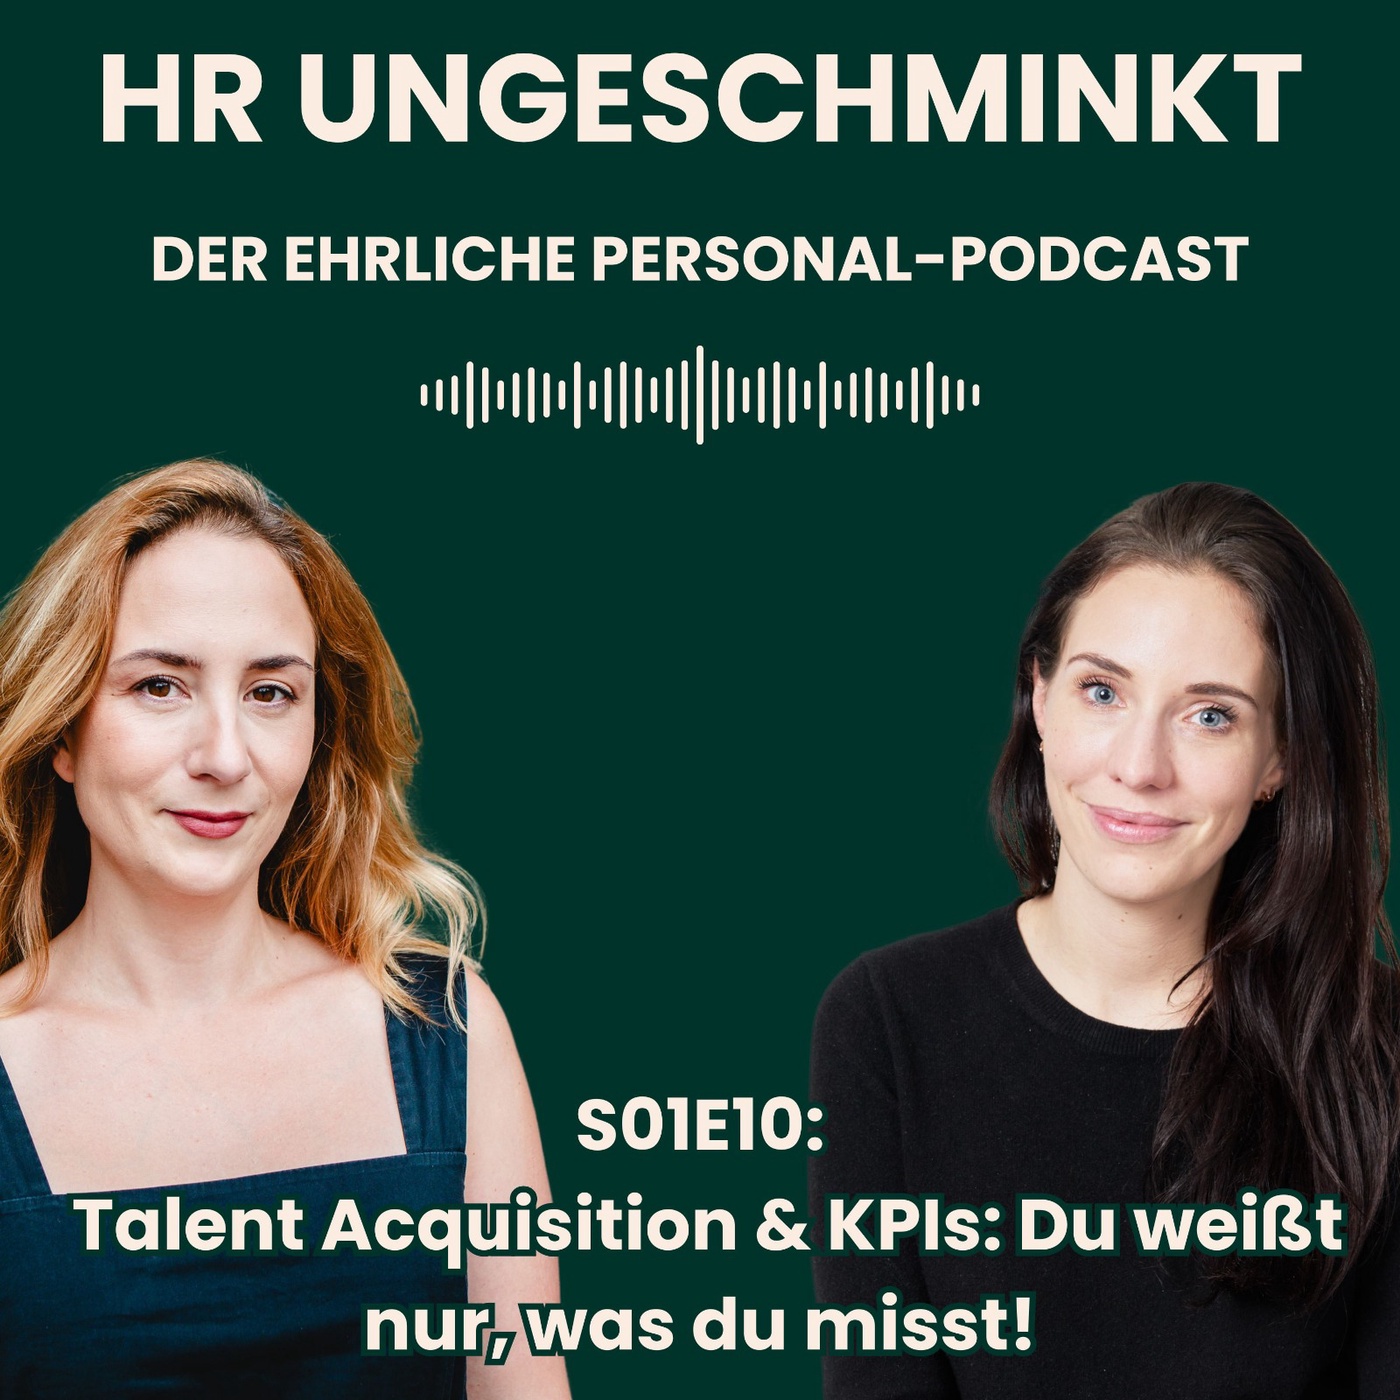 S01E10: Talent Acquisition & KPIs: Du weißt nur, was du misst!